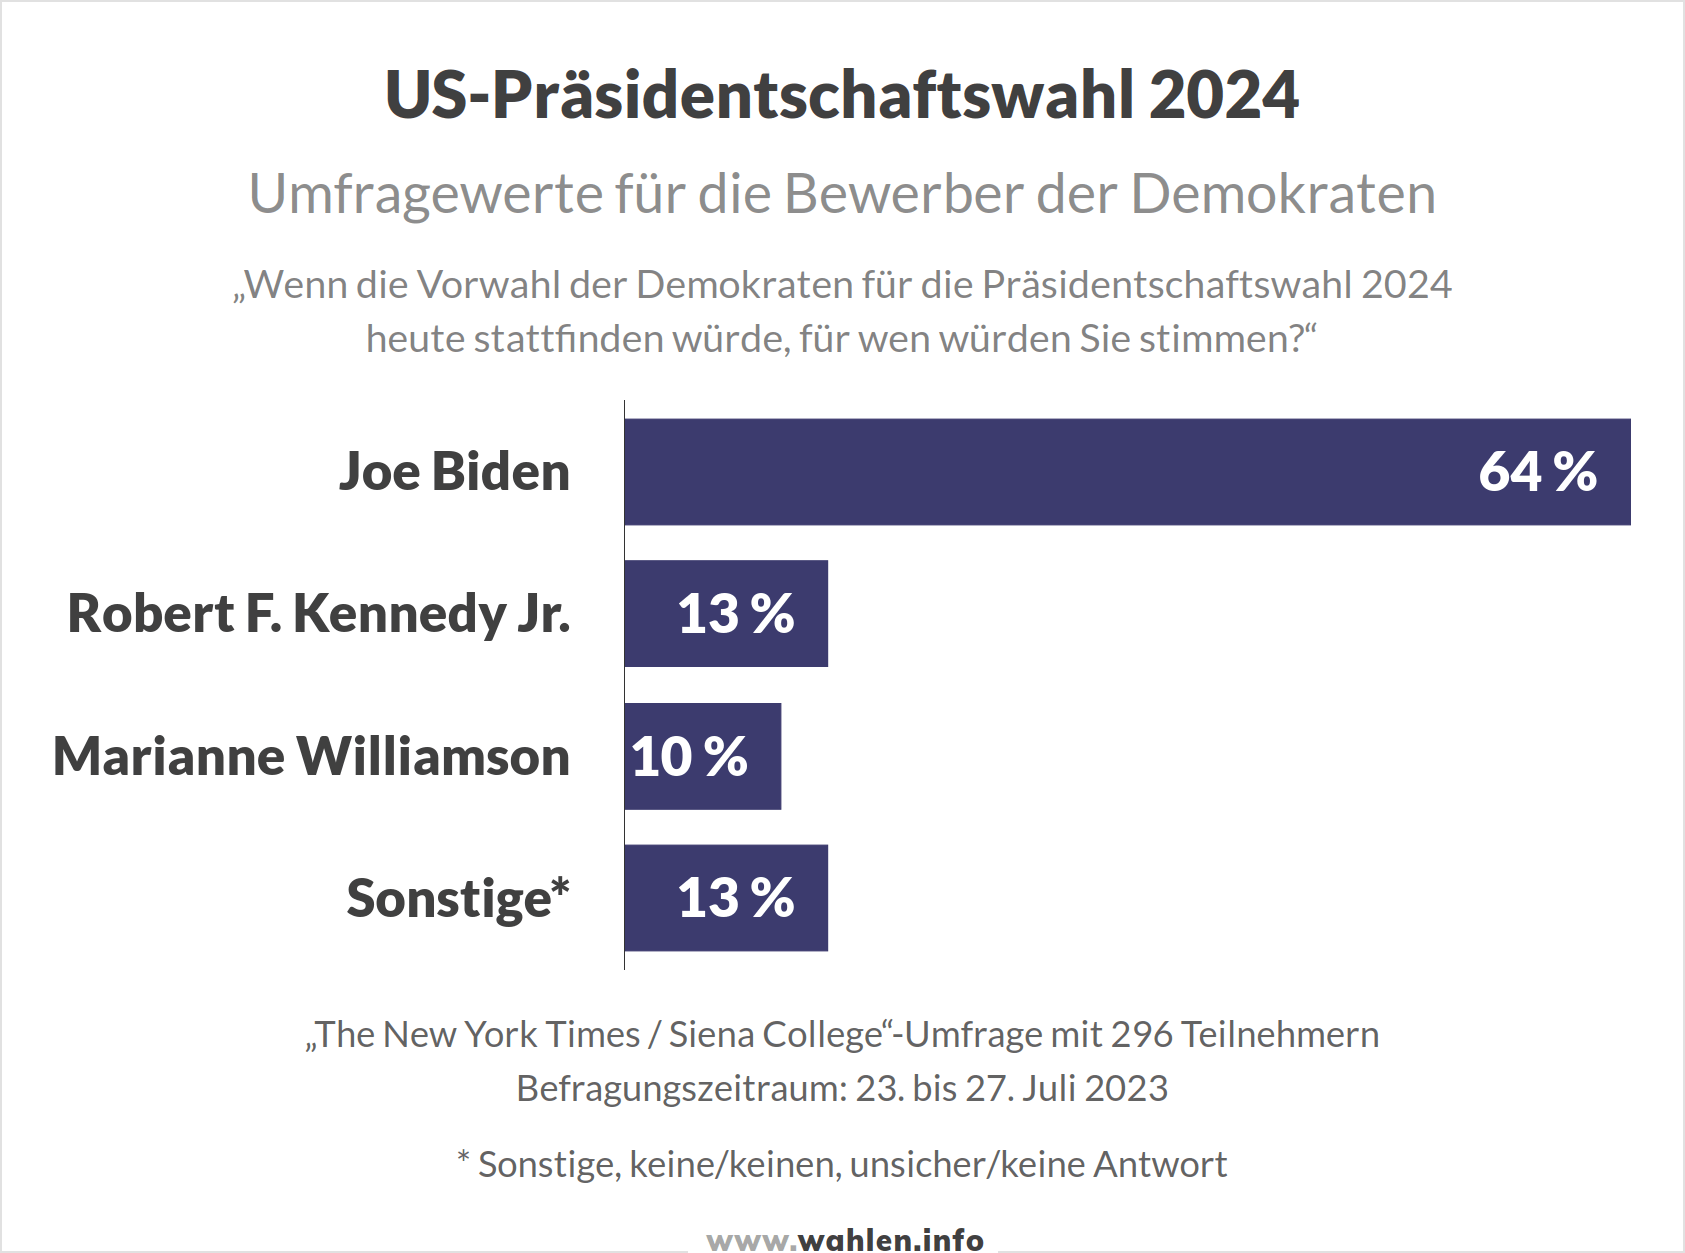 US-Wahl 2024 - Umfragen Vorwahl der Demokraten für die Präsidentschaftswahl (Joe Biden, Robert Kennedy, Marianne Williamson)